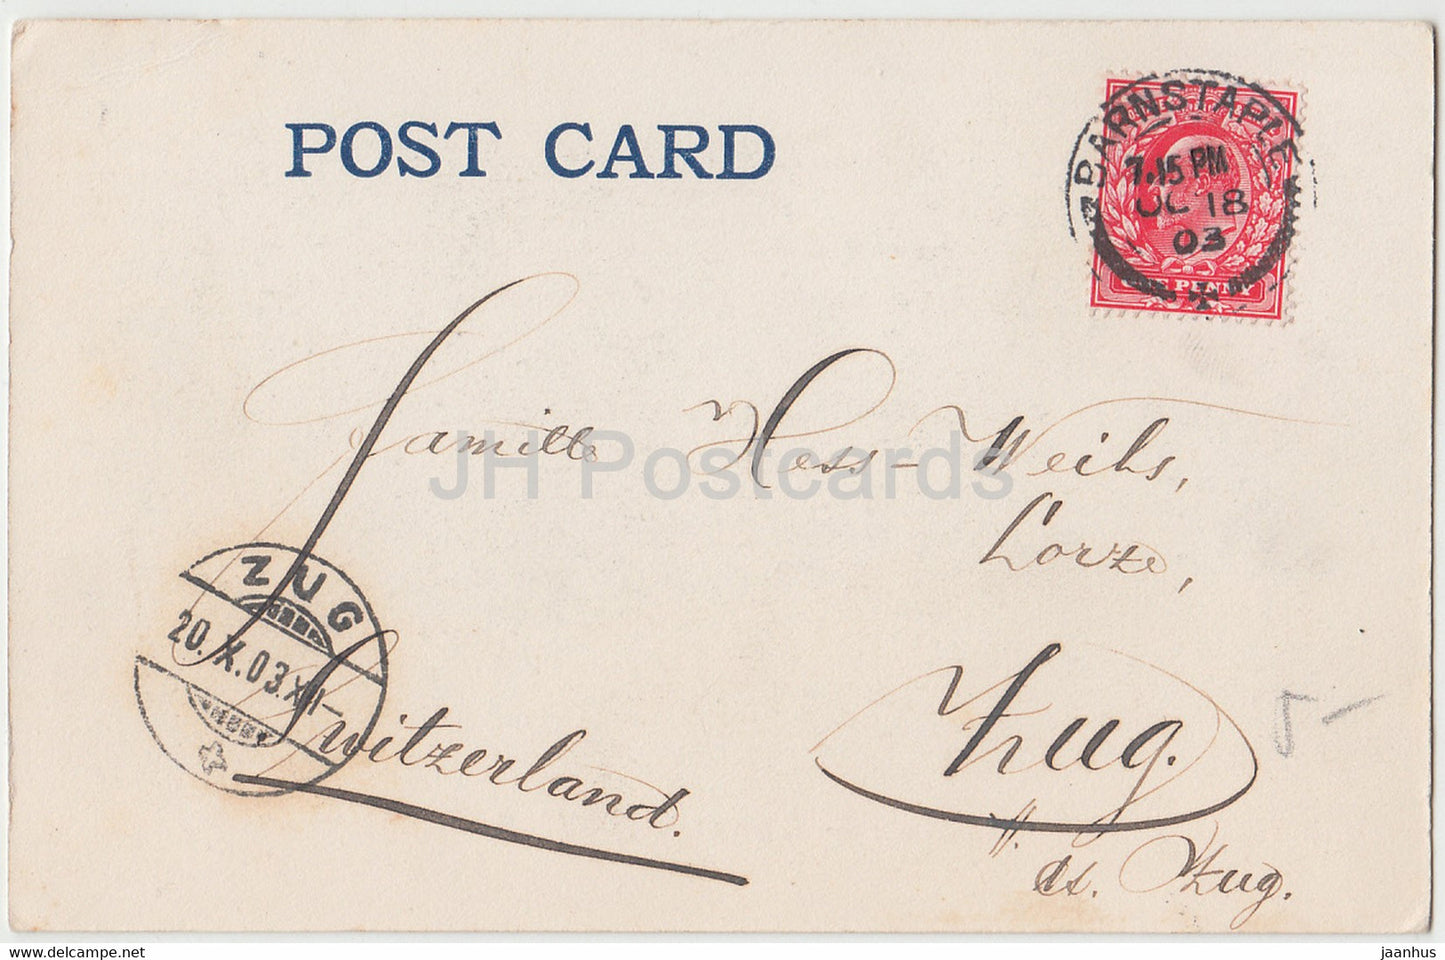 Londres - Tour de Londres - calèche - 6204 - carte postale ancienne - 1903 - Angleterre - Royaume-Uni - utilisé